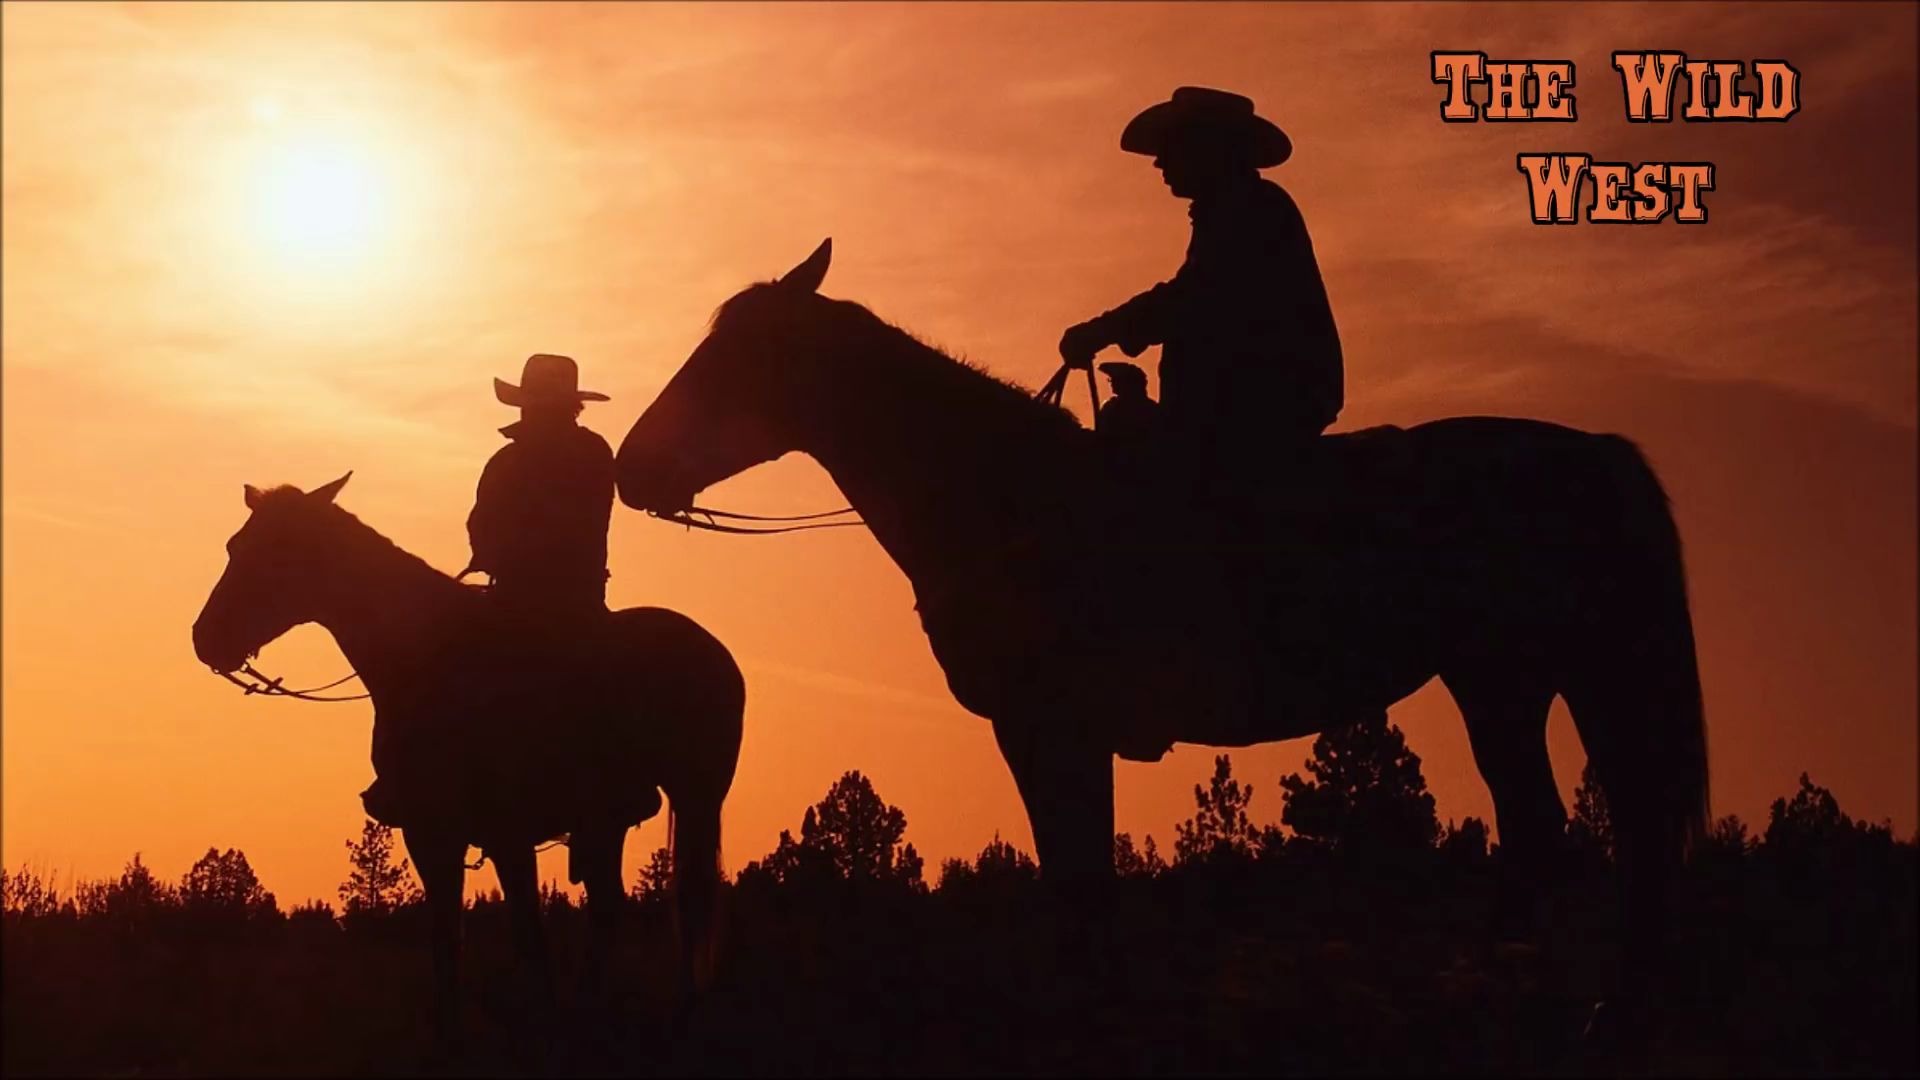 狂野西部音乐-狂野的西方 The Wild West